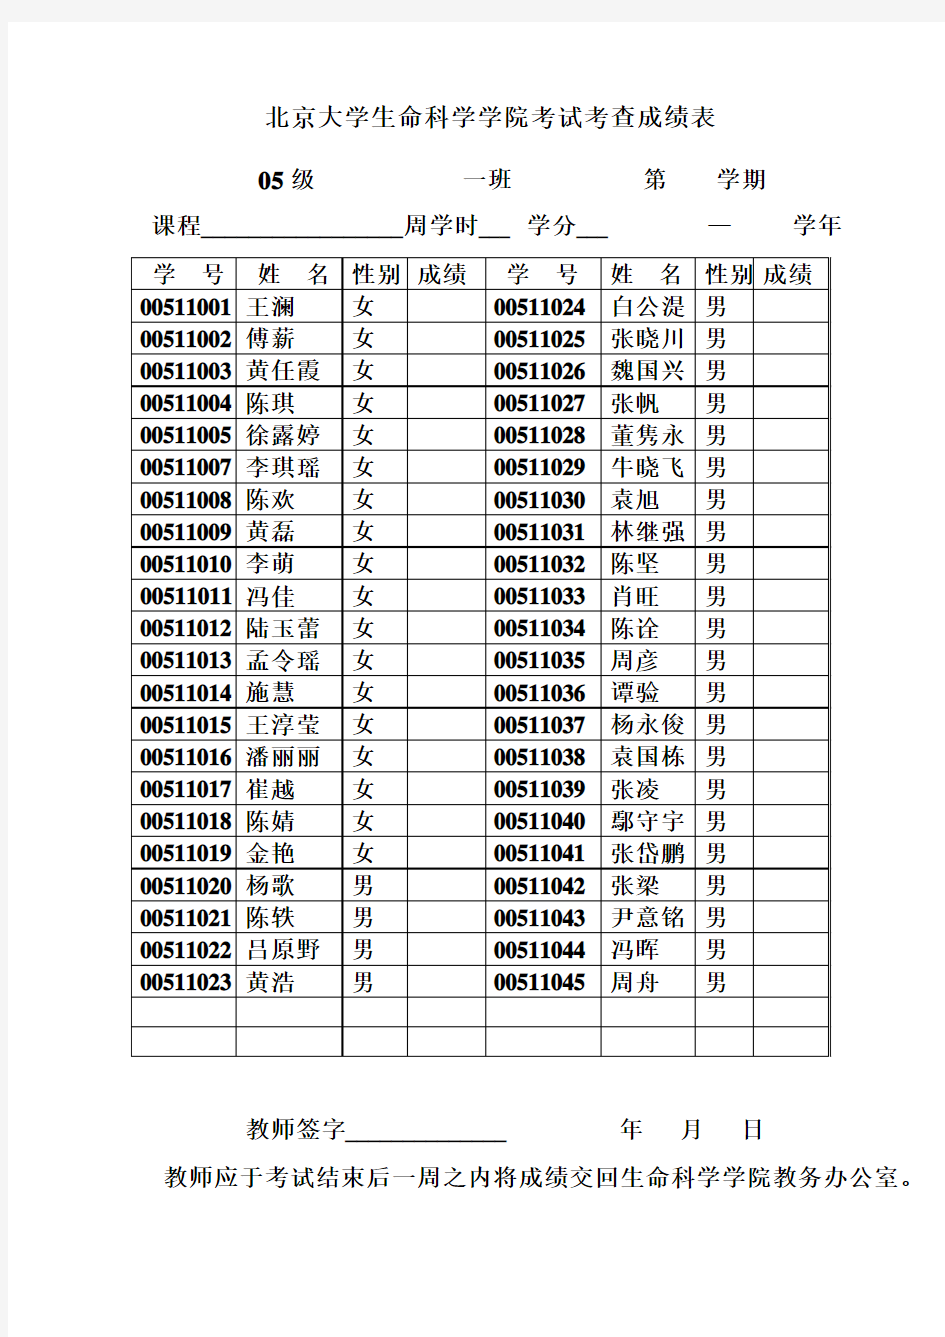 北京大学生命科学学院考试考查成绩表